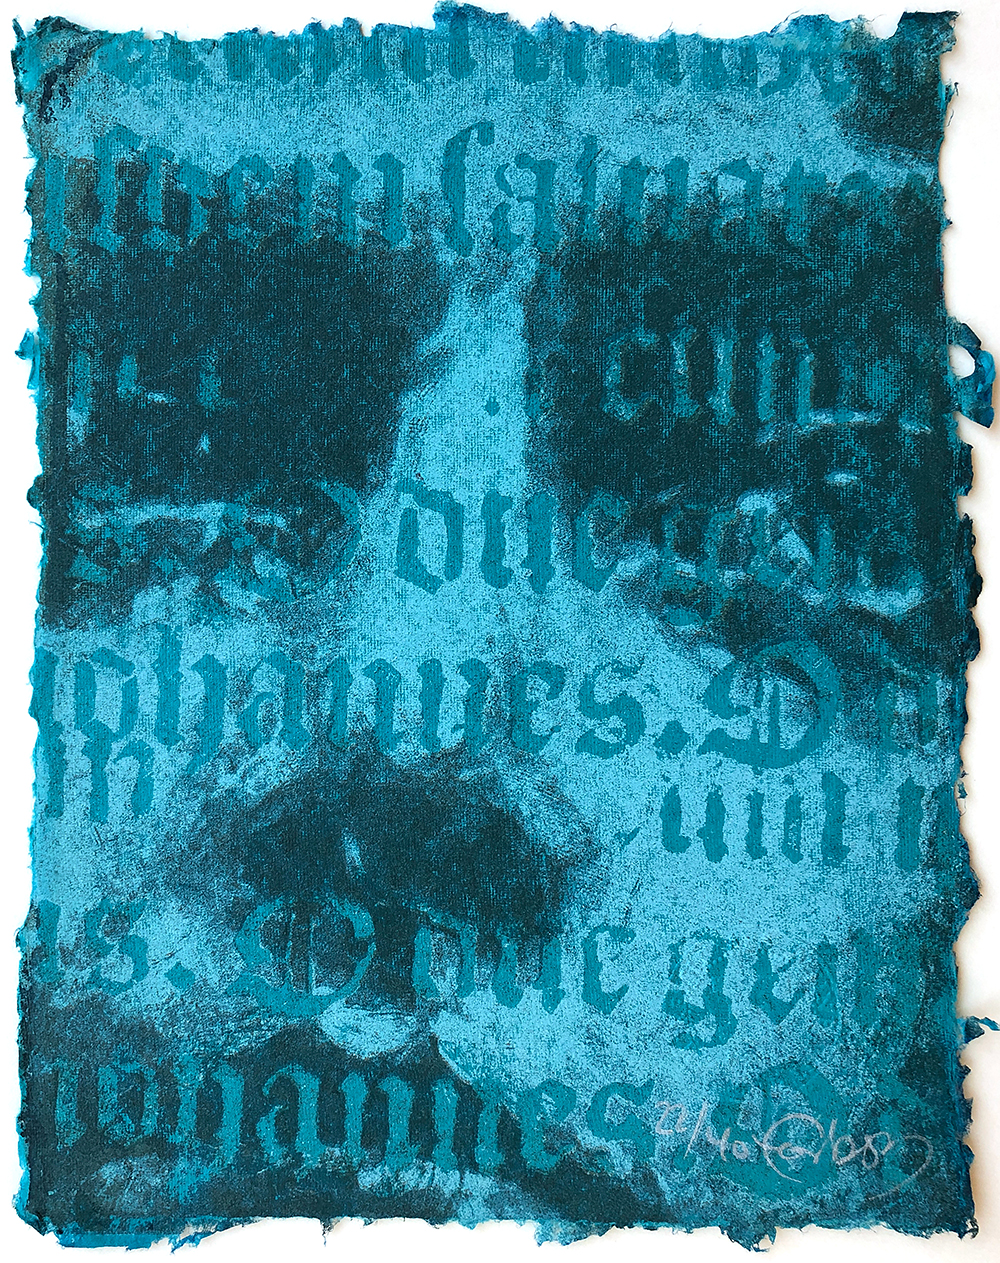 Forberg, Jan Olav - portrett på turkis papir med gotisk skrift 22/40